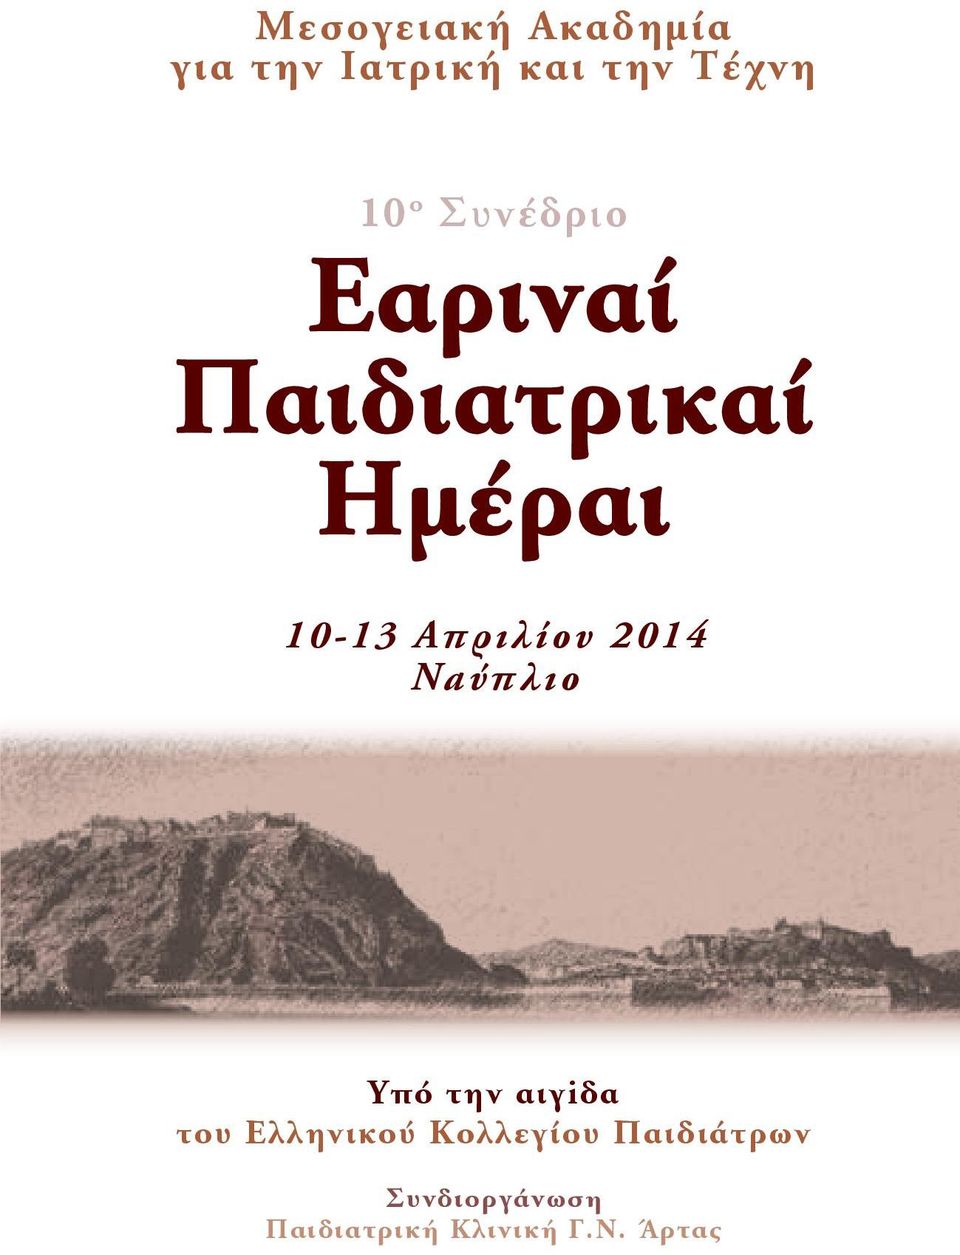 2014 Ναύπλιο Υπό την αιγiδα του Ελληνικού Κολλεγίου